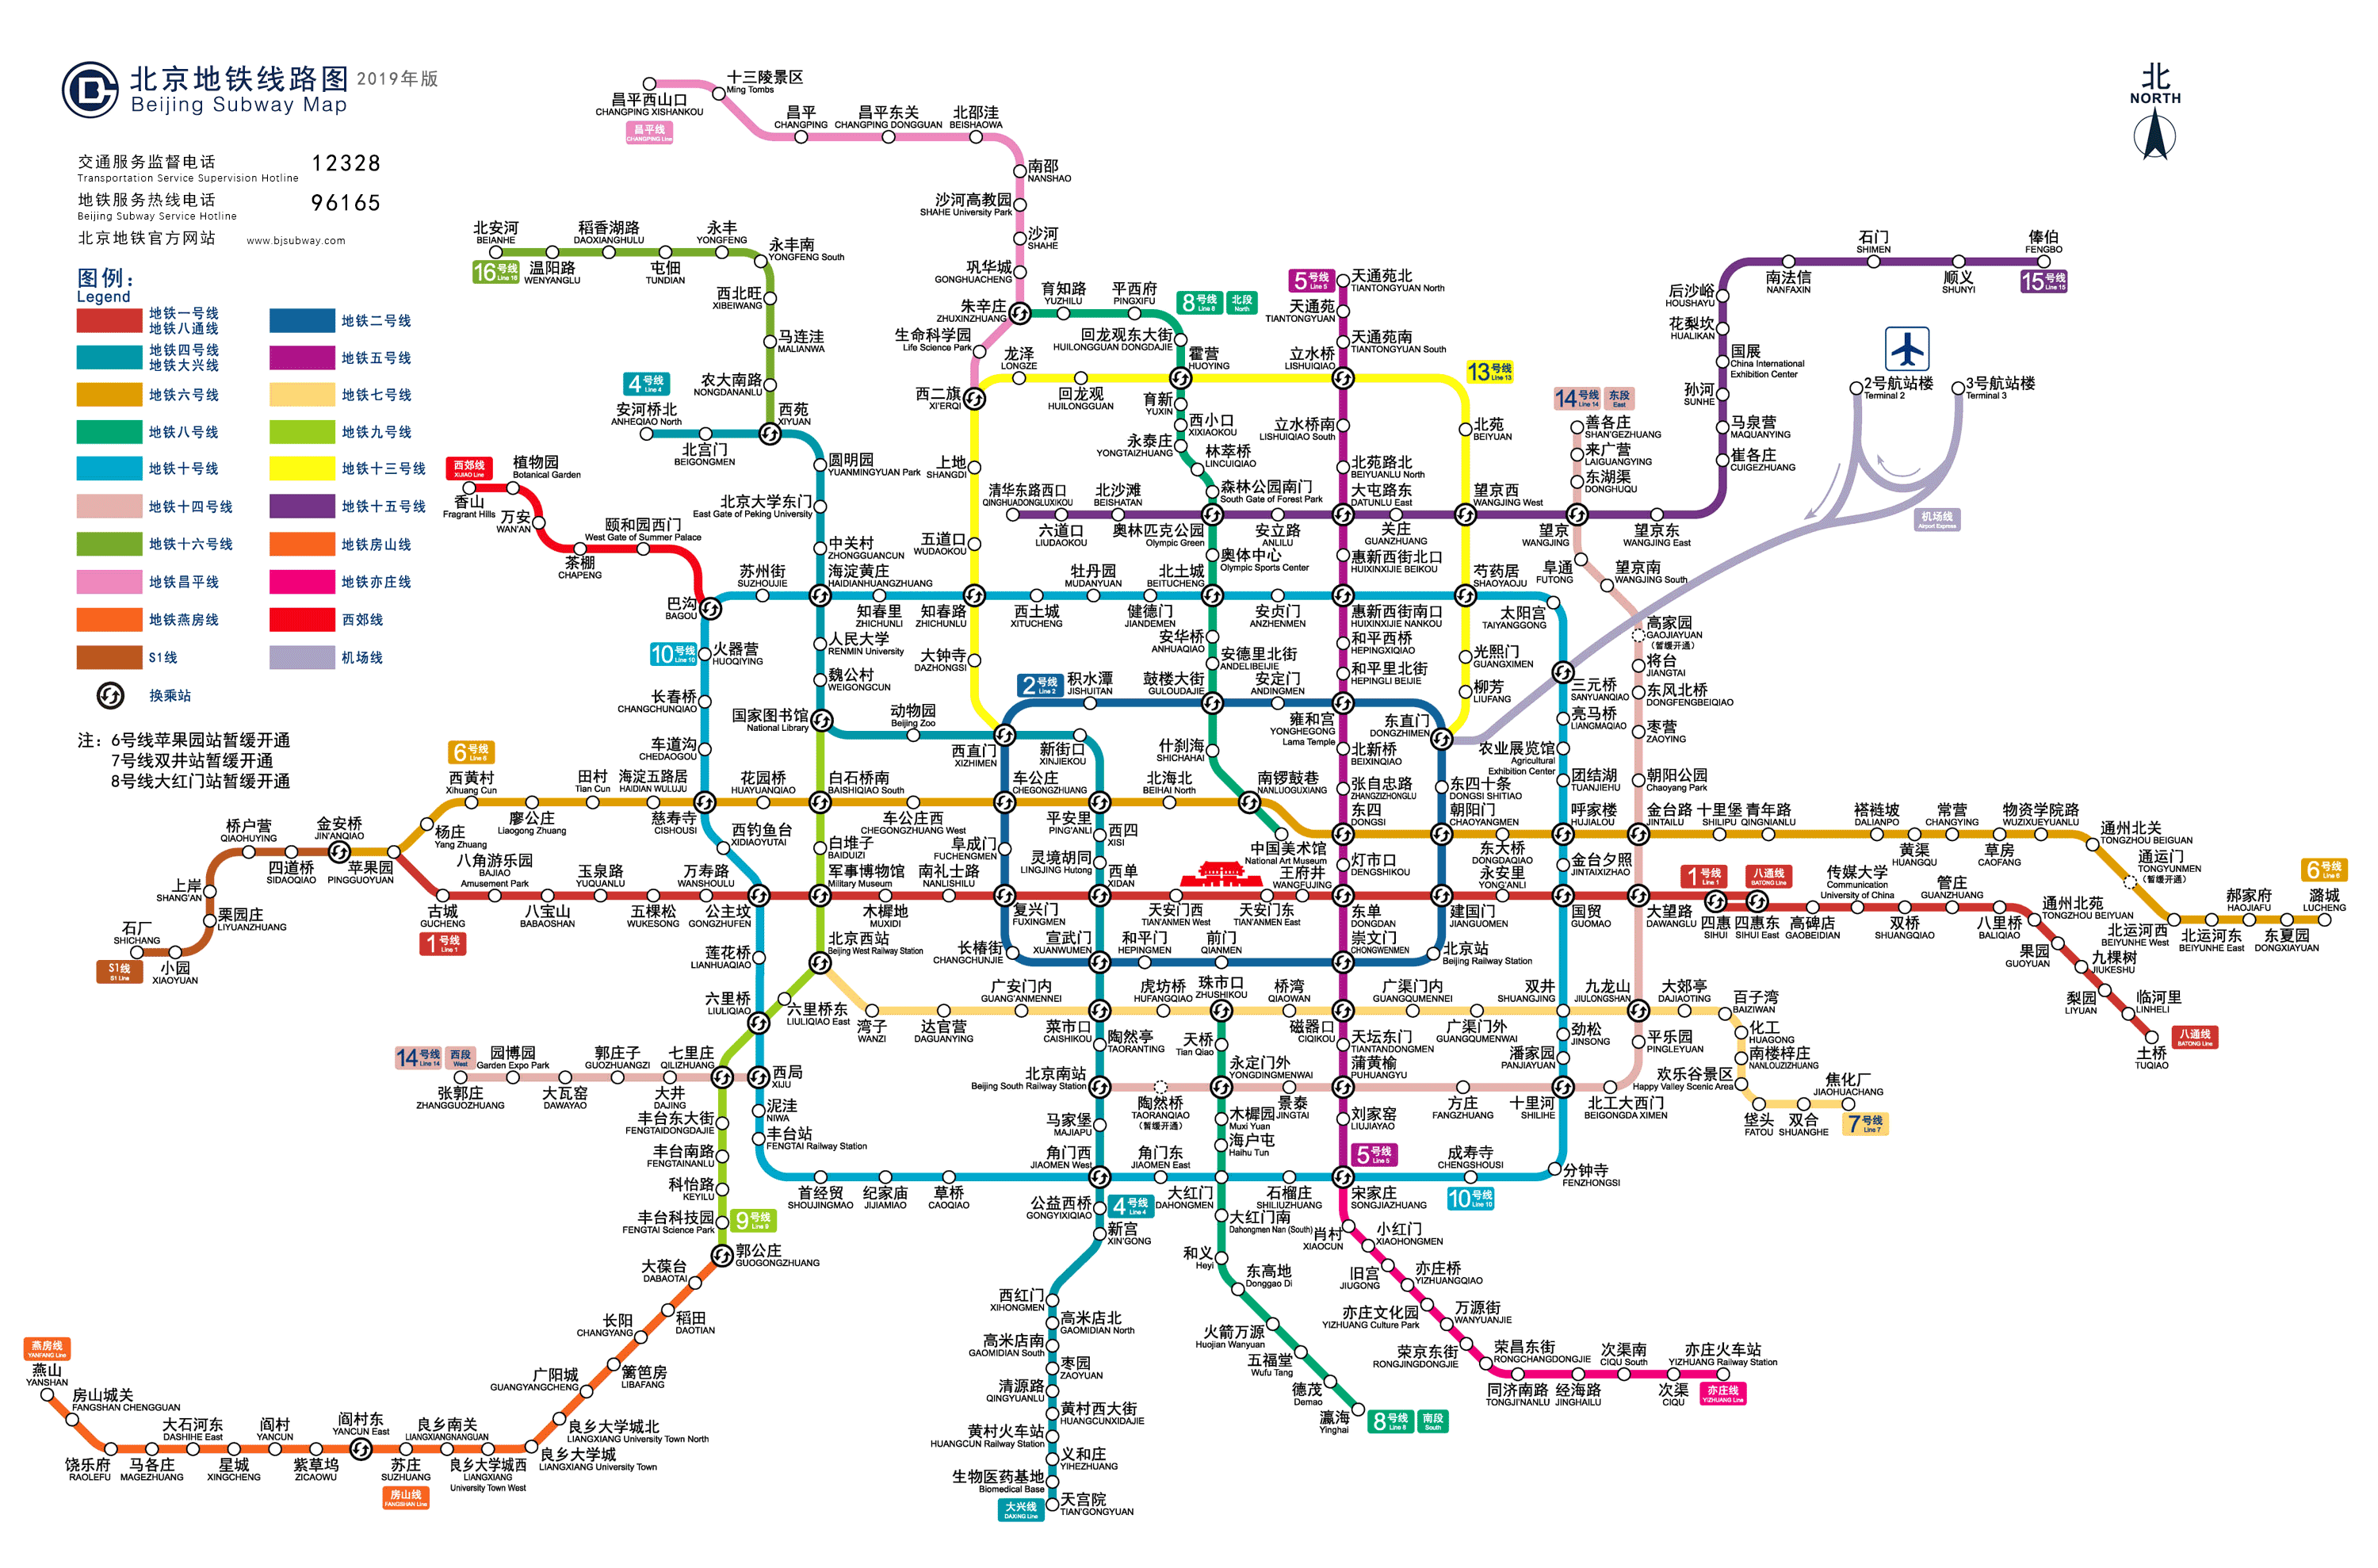 北京地铁运营线路图2019年最新版推荐(图)